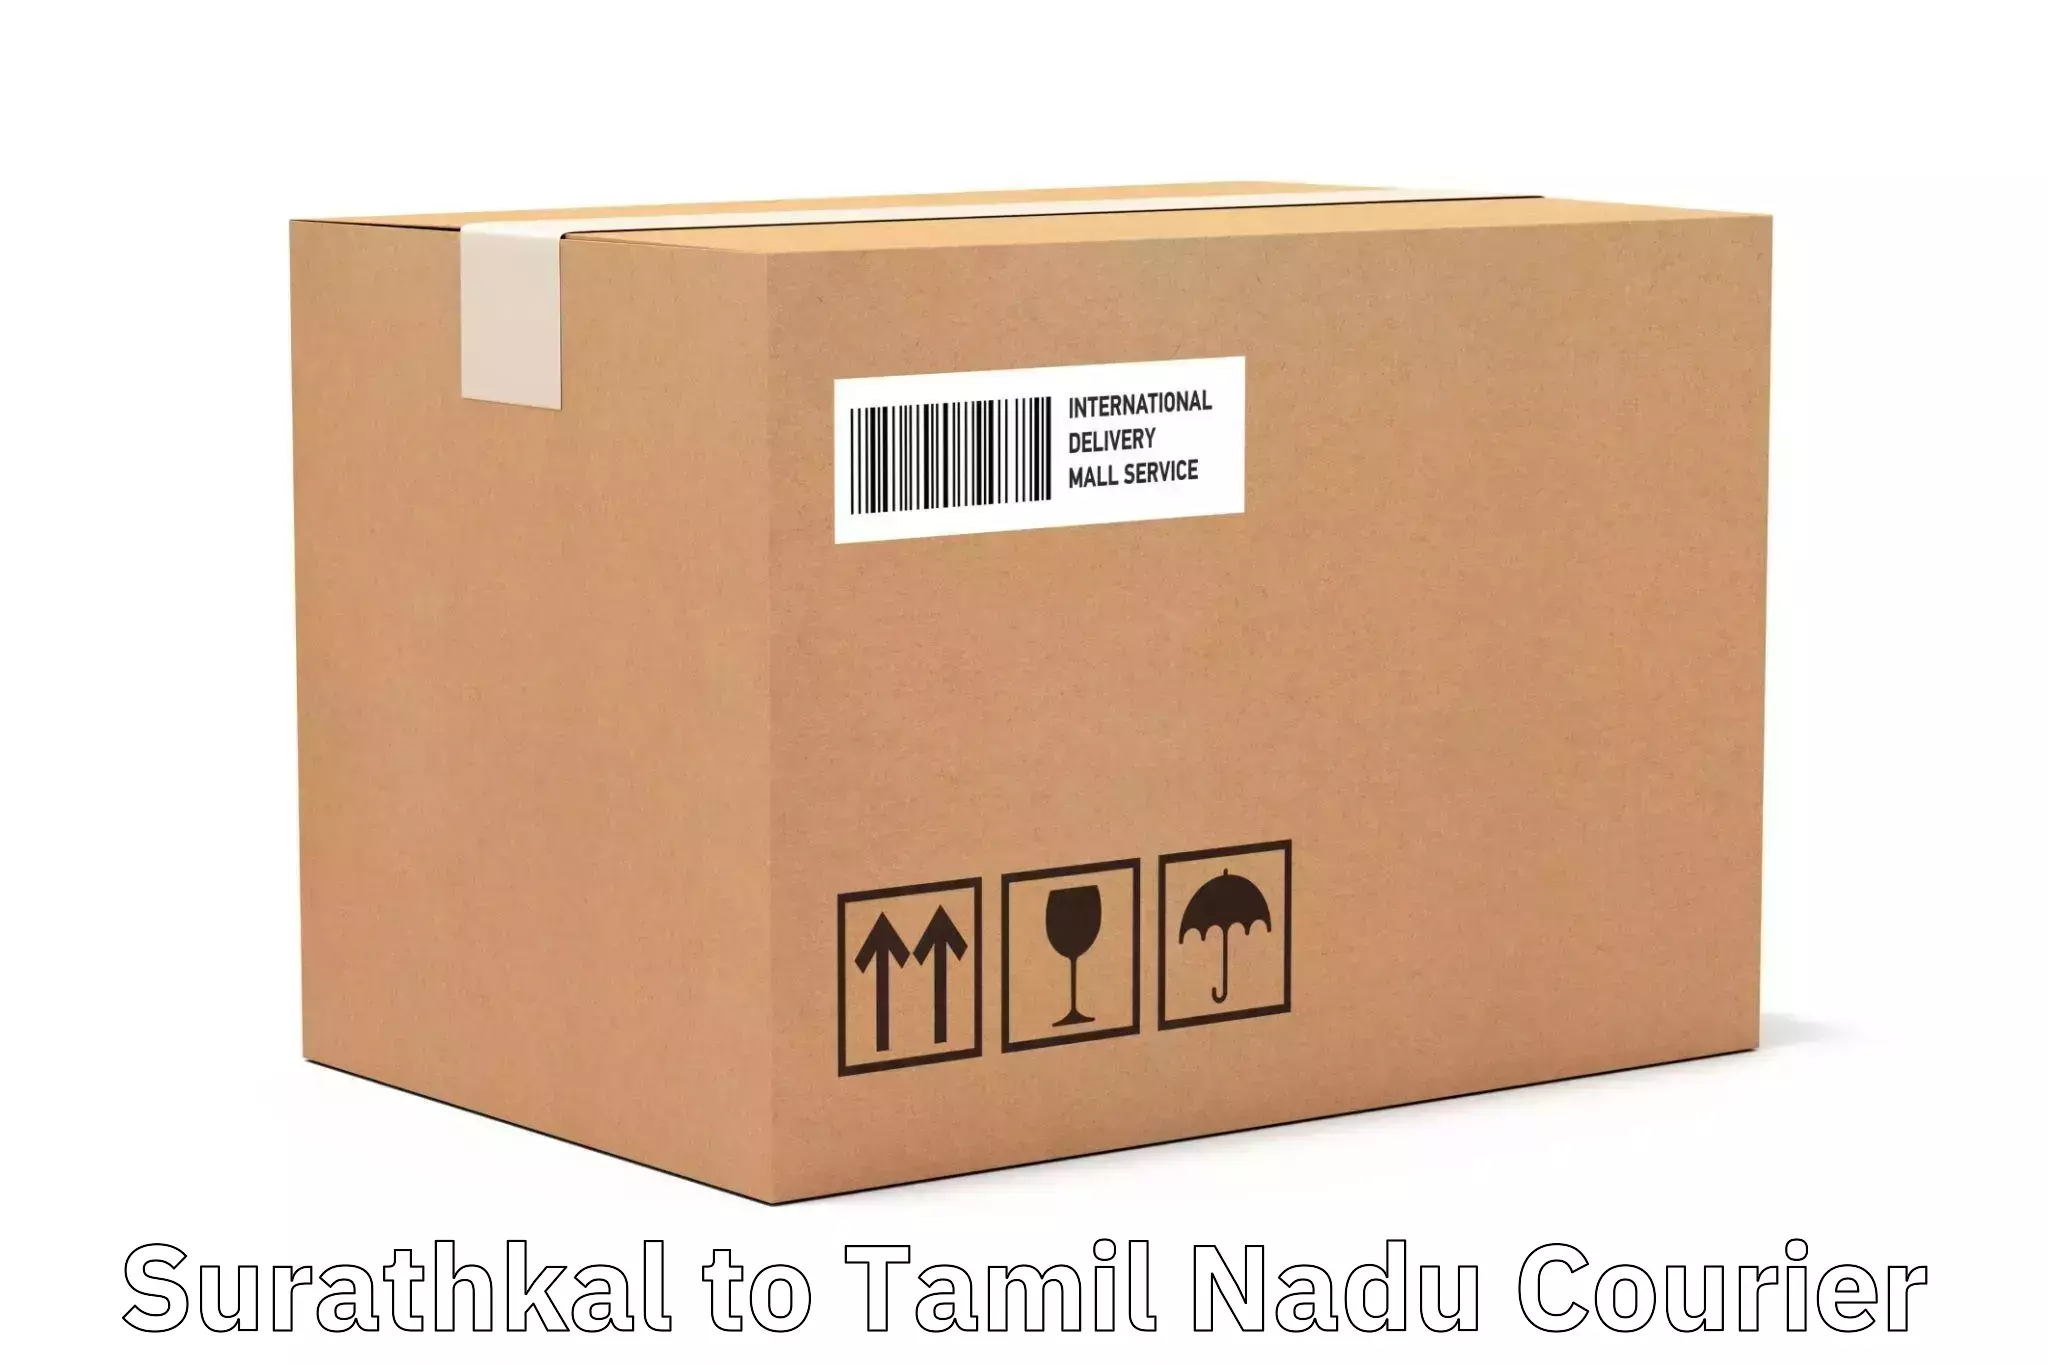 Smart logistics strategies Surathkal to Tamil Nadu